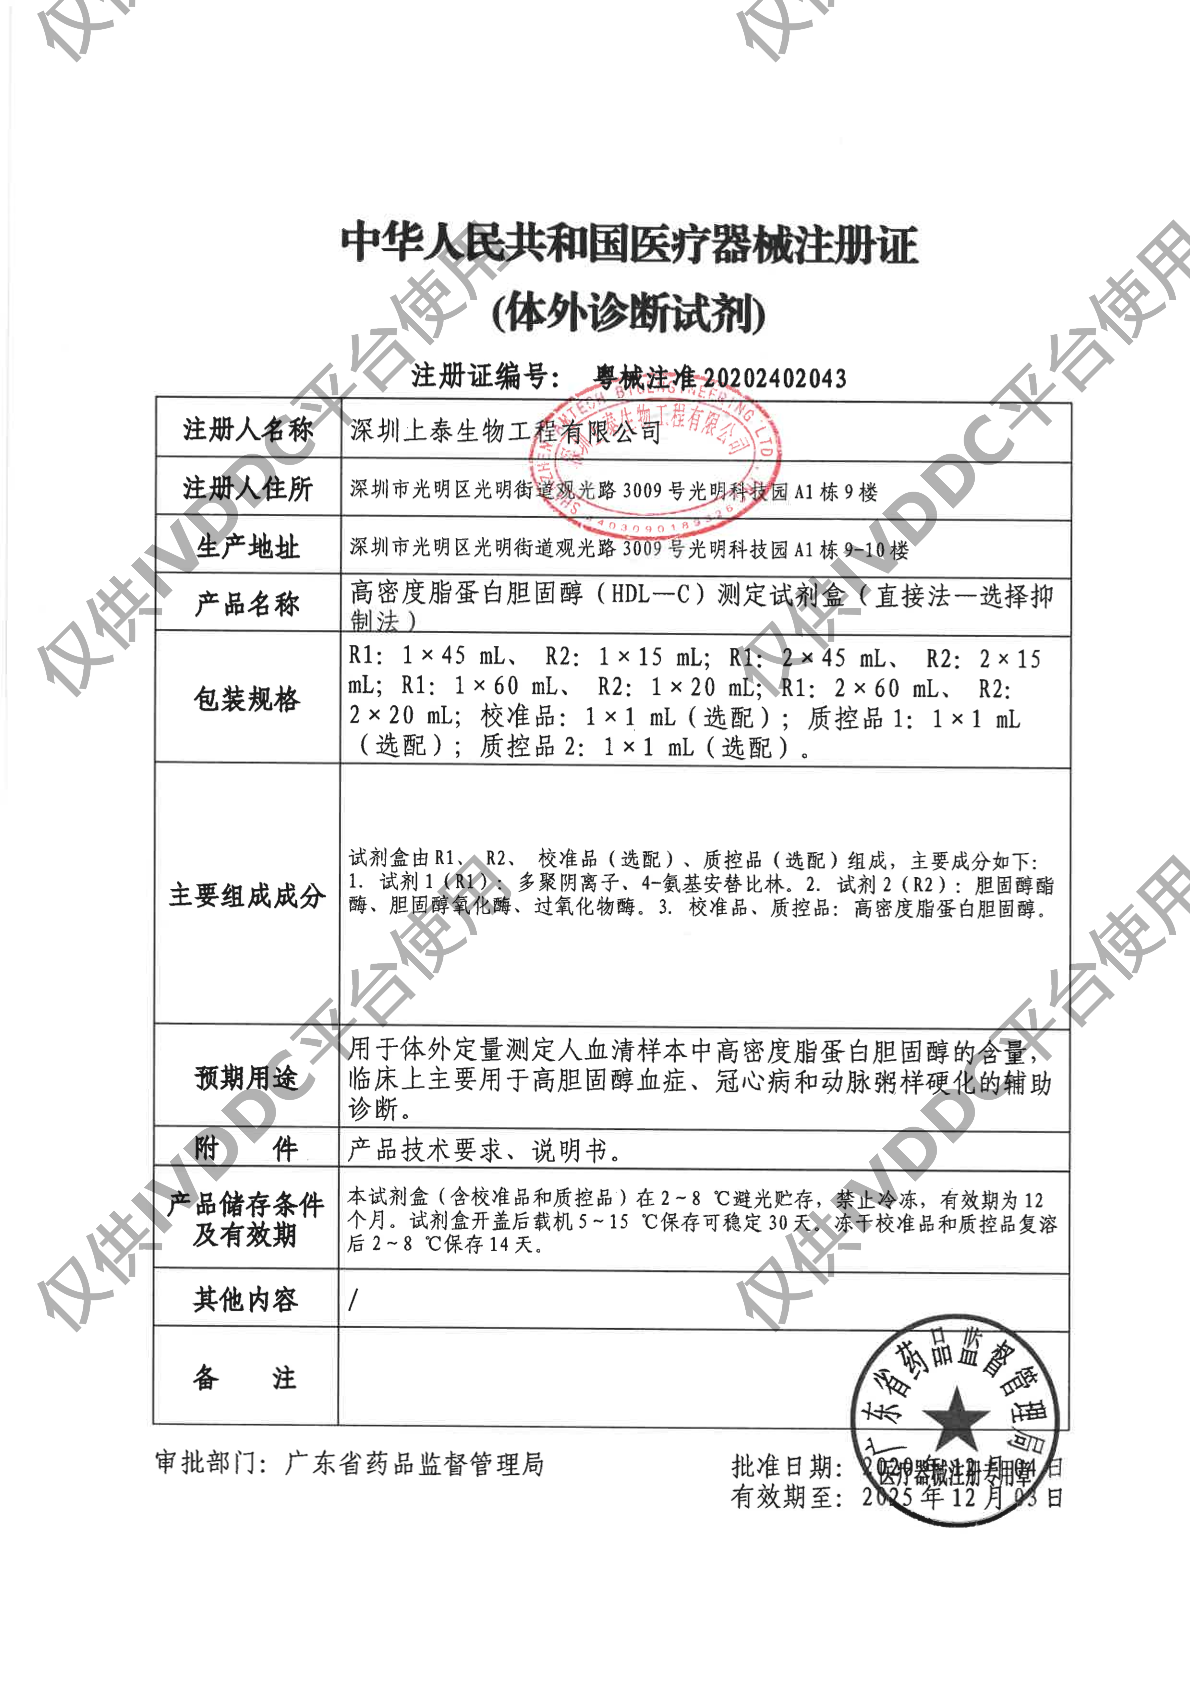 【深圳上泰】高密度脂蛋白胆固醇(HDL-C)测定试剂盒(直接法-选择抑制法)注册证